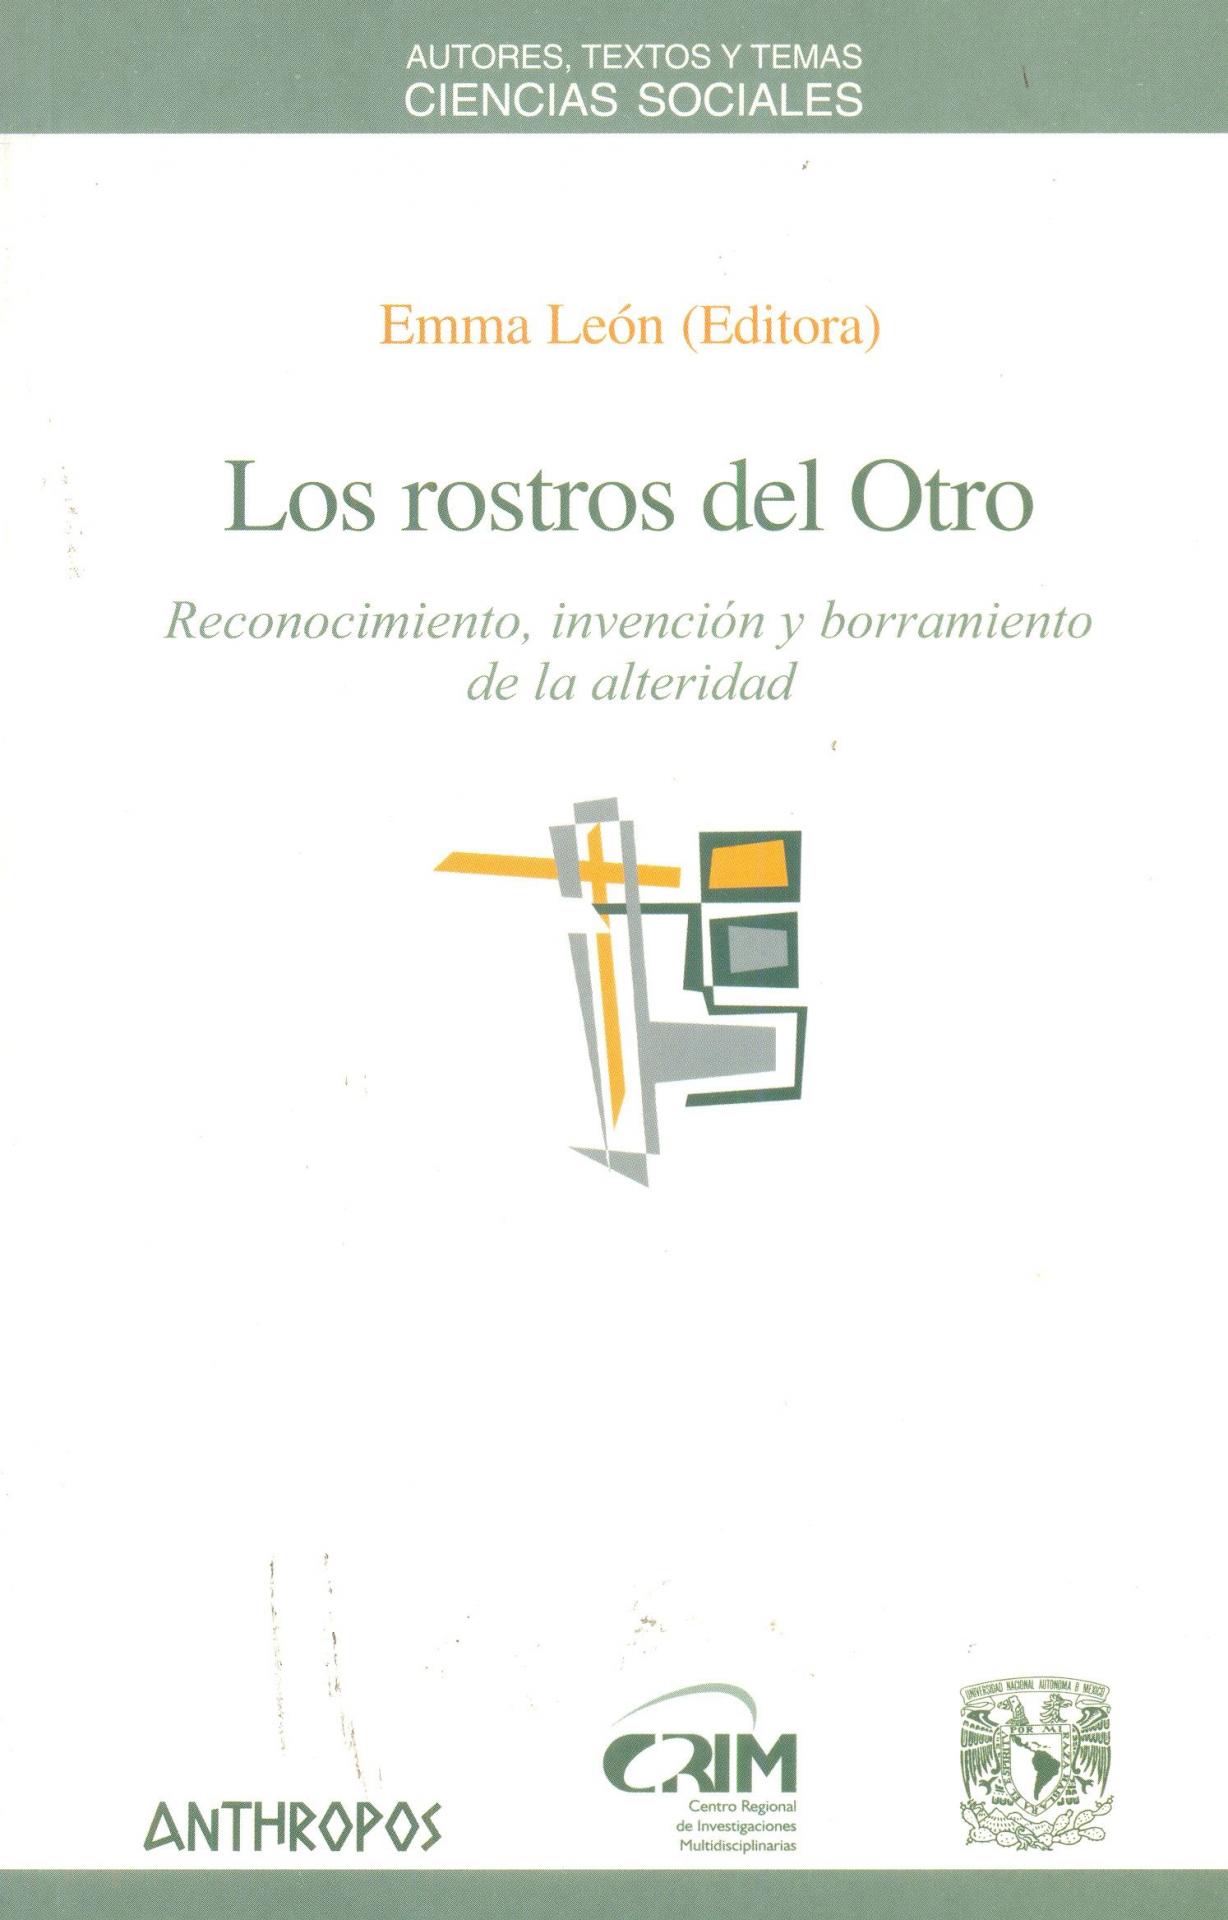 LOS ROSTROS DEL OTRO. Reconocimiento, invención y borramiento de la alteridad. León, E.